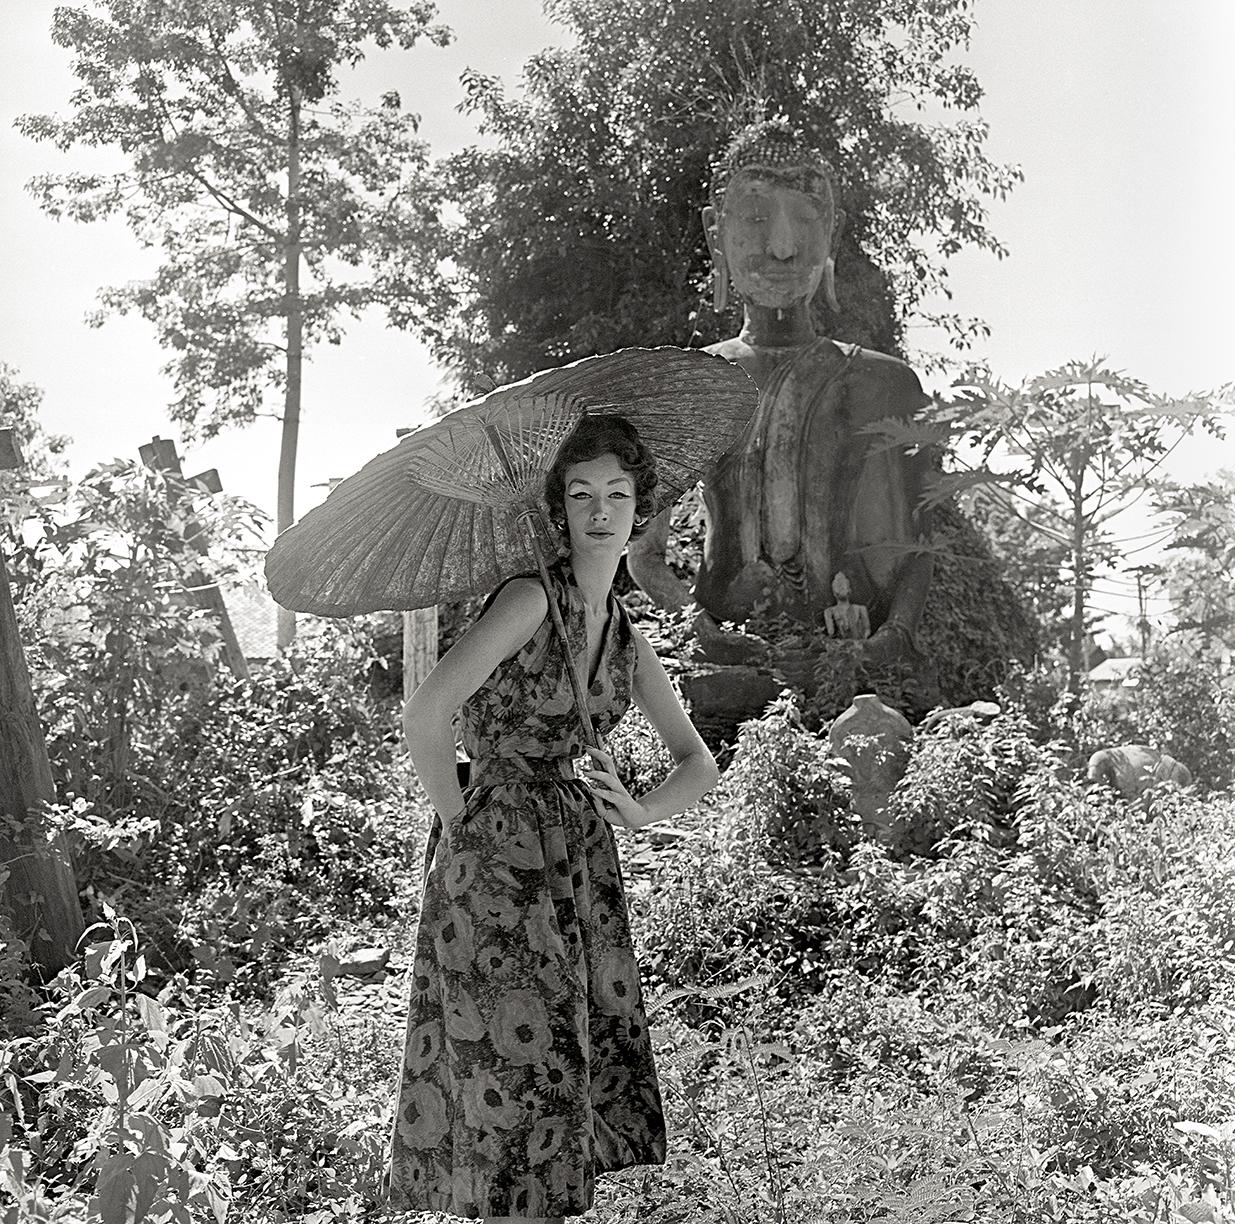 Ausgewählt aus dem Derujinsky: Around The World Portfolio, aufgenommen in The Garden Of Buddhas, Aythutthaya in Thailand, für Harper's Bazaar

Künstler: Gleb Derujinsky

Titel: Garten der Buddhas

Jahr: 1957

Estate Edition: signiert, gestempelt und